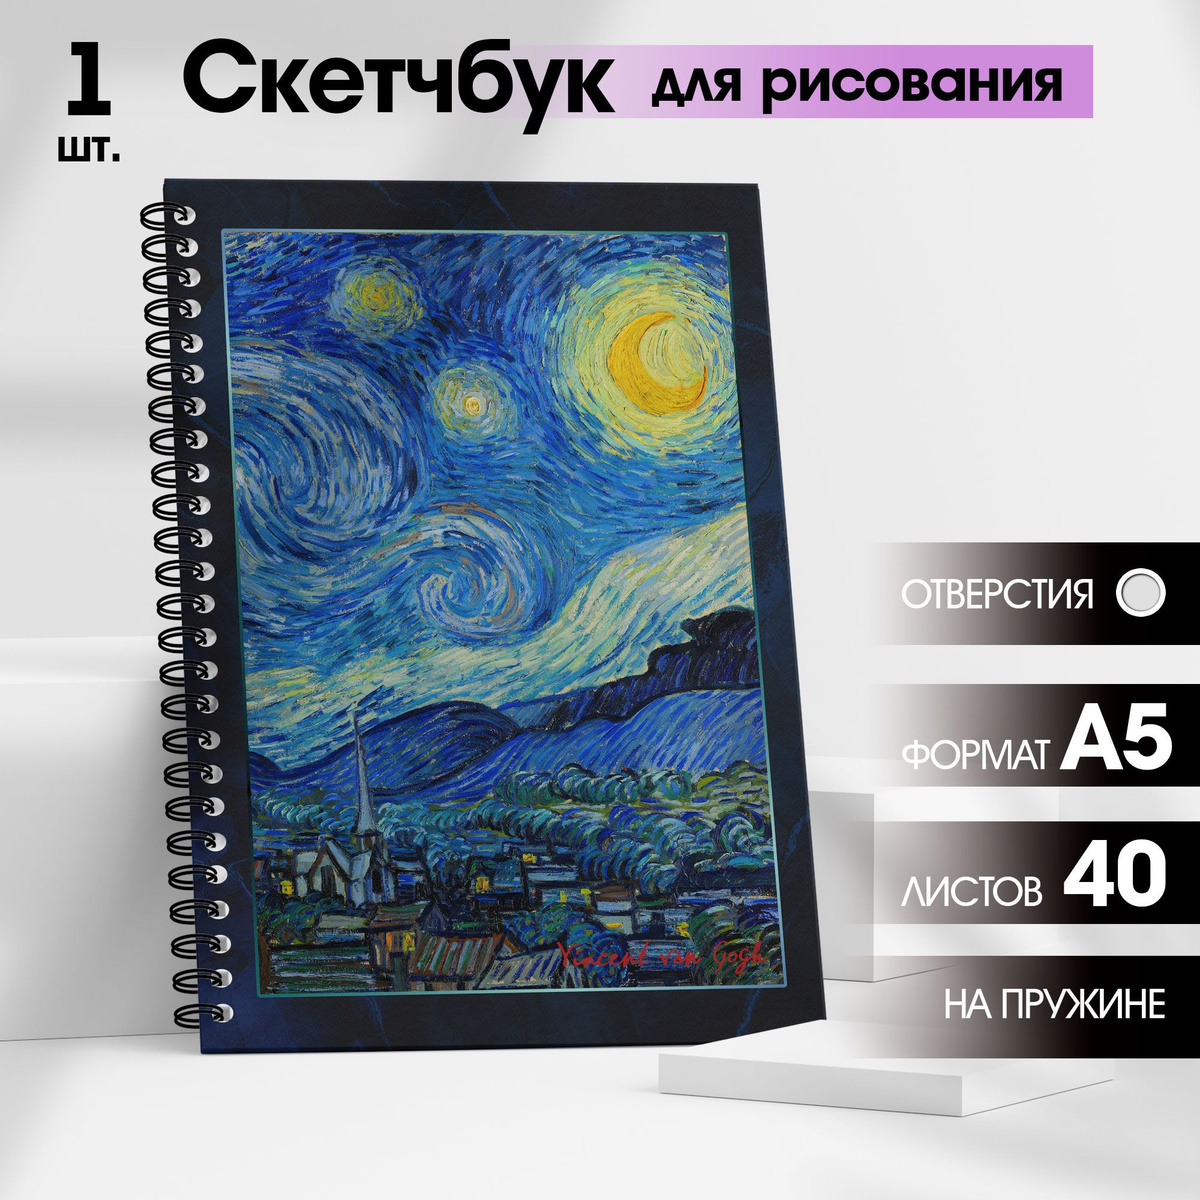 Скетчбук для рисования / Блокнот для скетчинга "Ван Гог. Звездная ночь" для маркеров и графики с твердой обложкой на кольцах, А5, 40 листов, WINLE